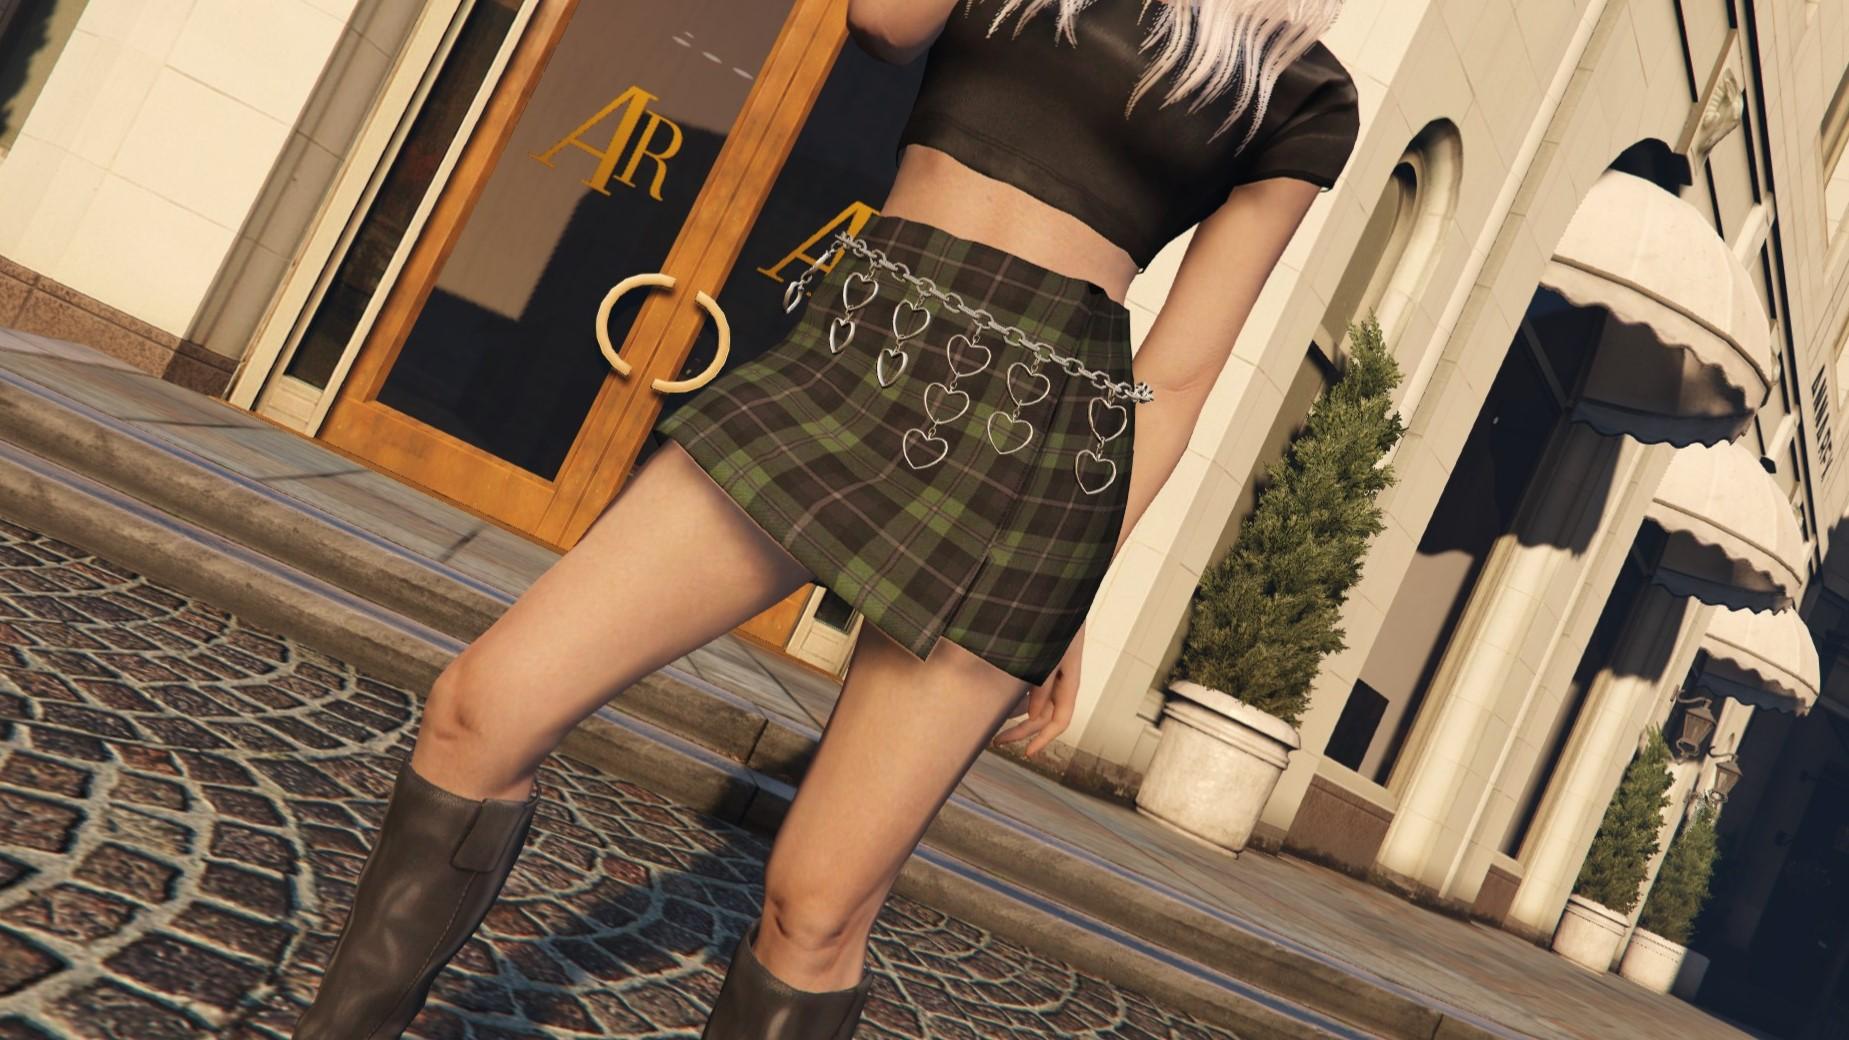 aneta kowalczyk recommends Skyrim Mini Skirt Mod